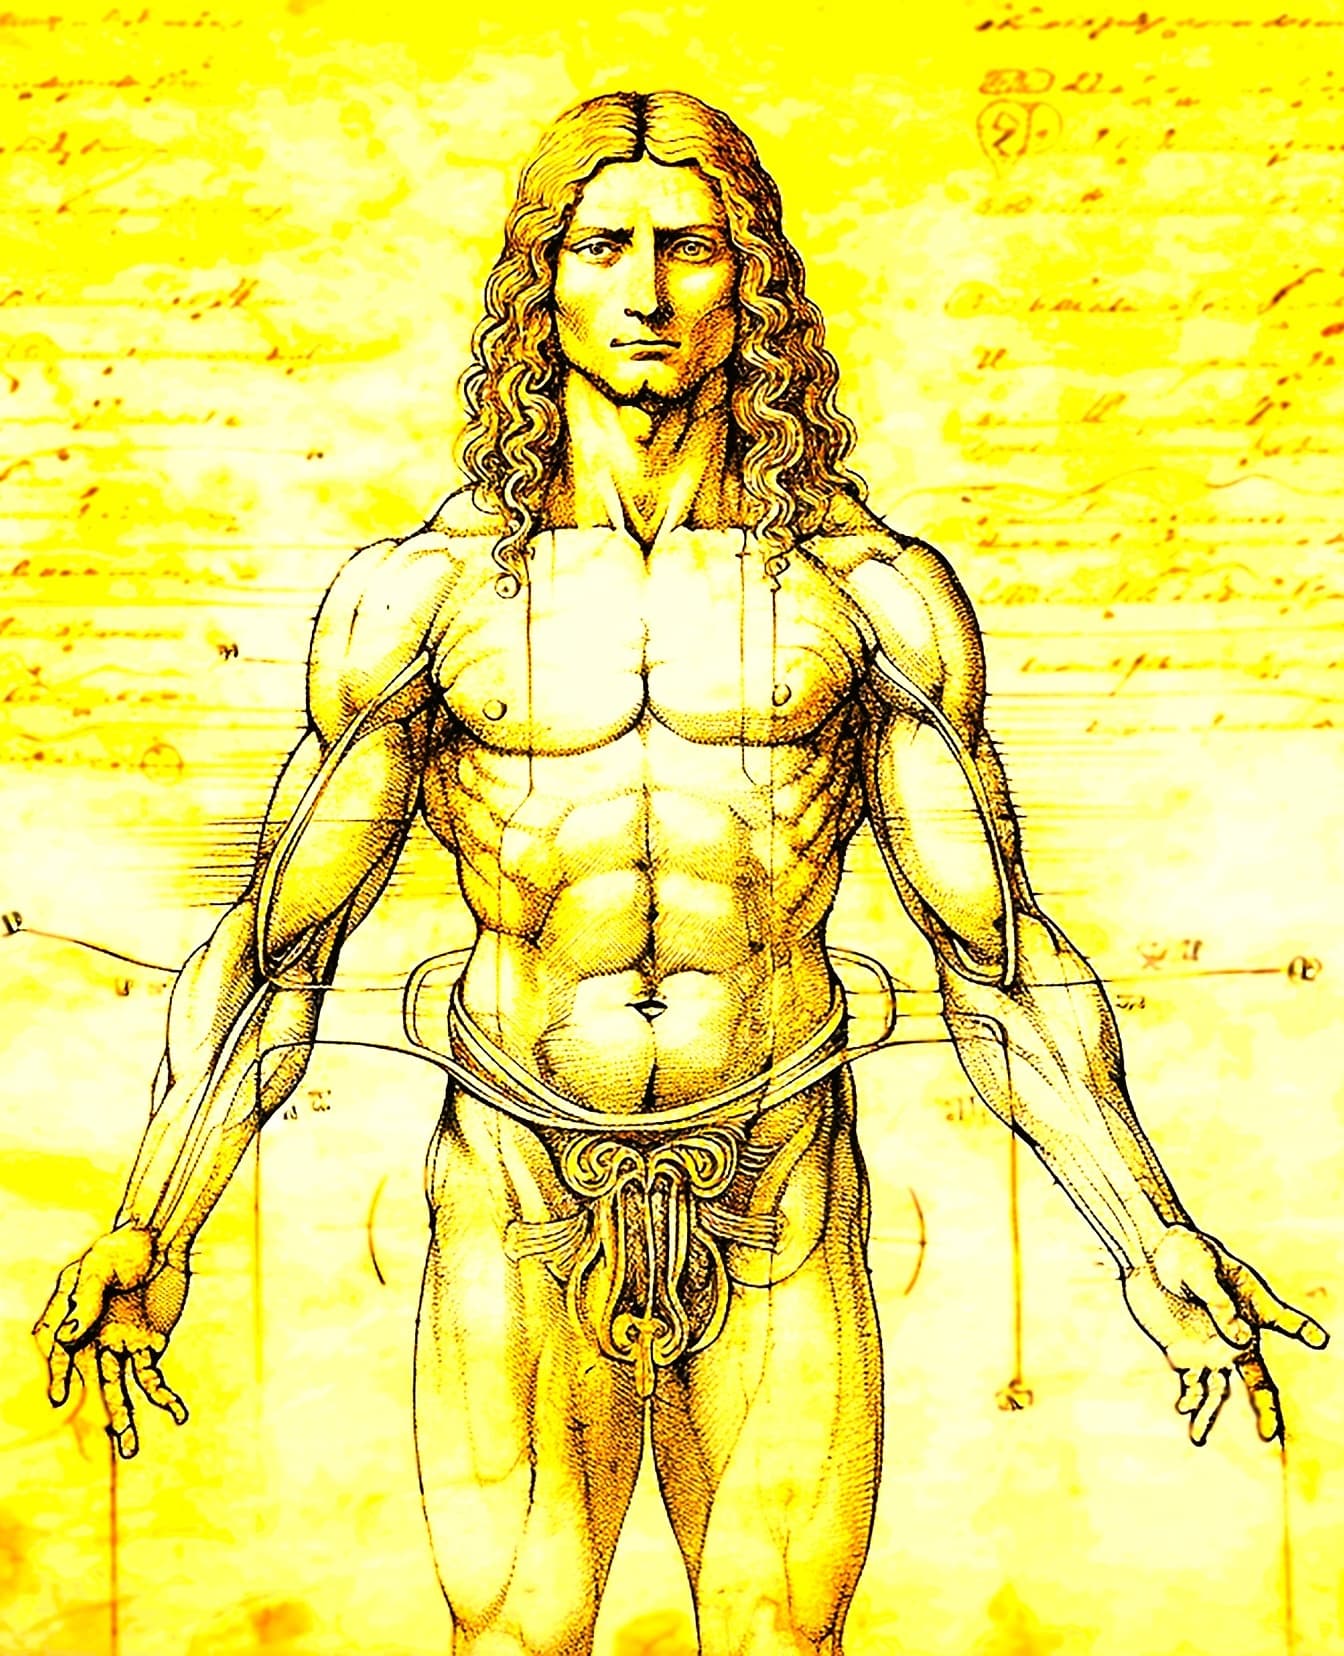 Dibujo de la anatomía de un hombre musculoso, al estilo del Hombre de Vitruvio de Leonardo da Vinci